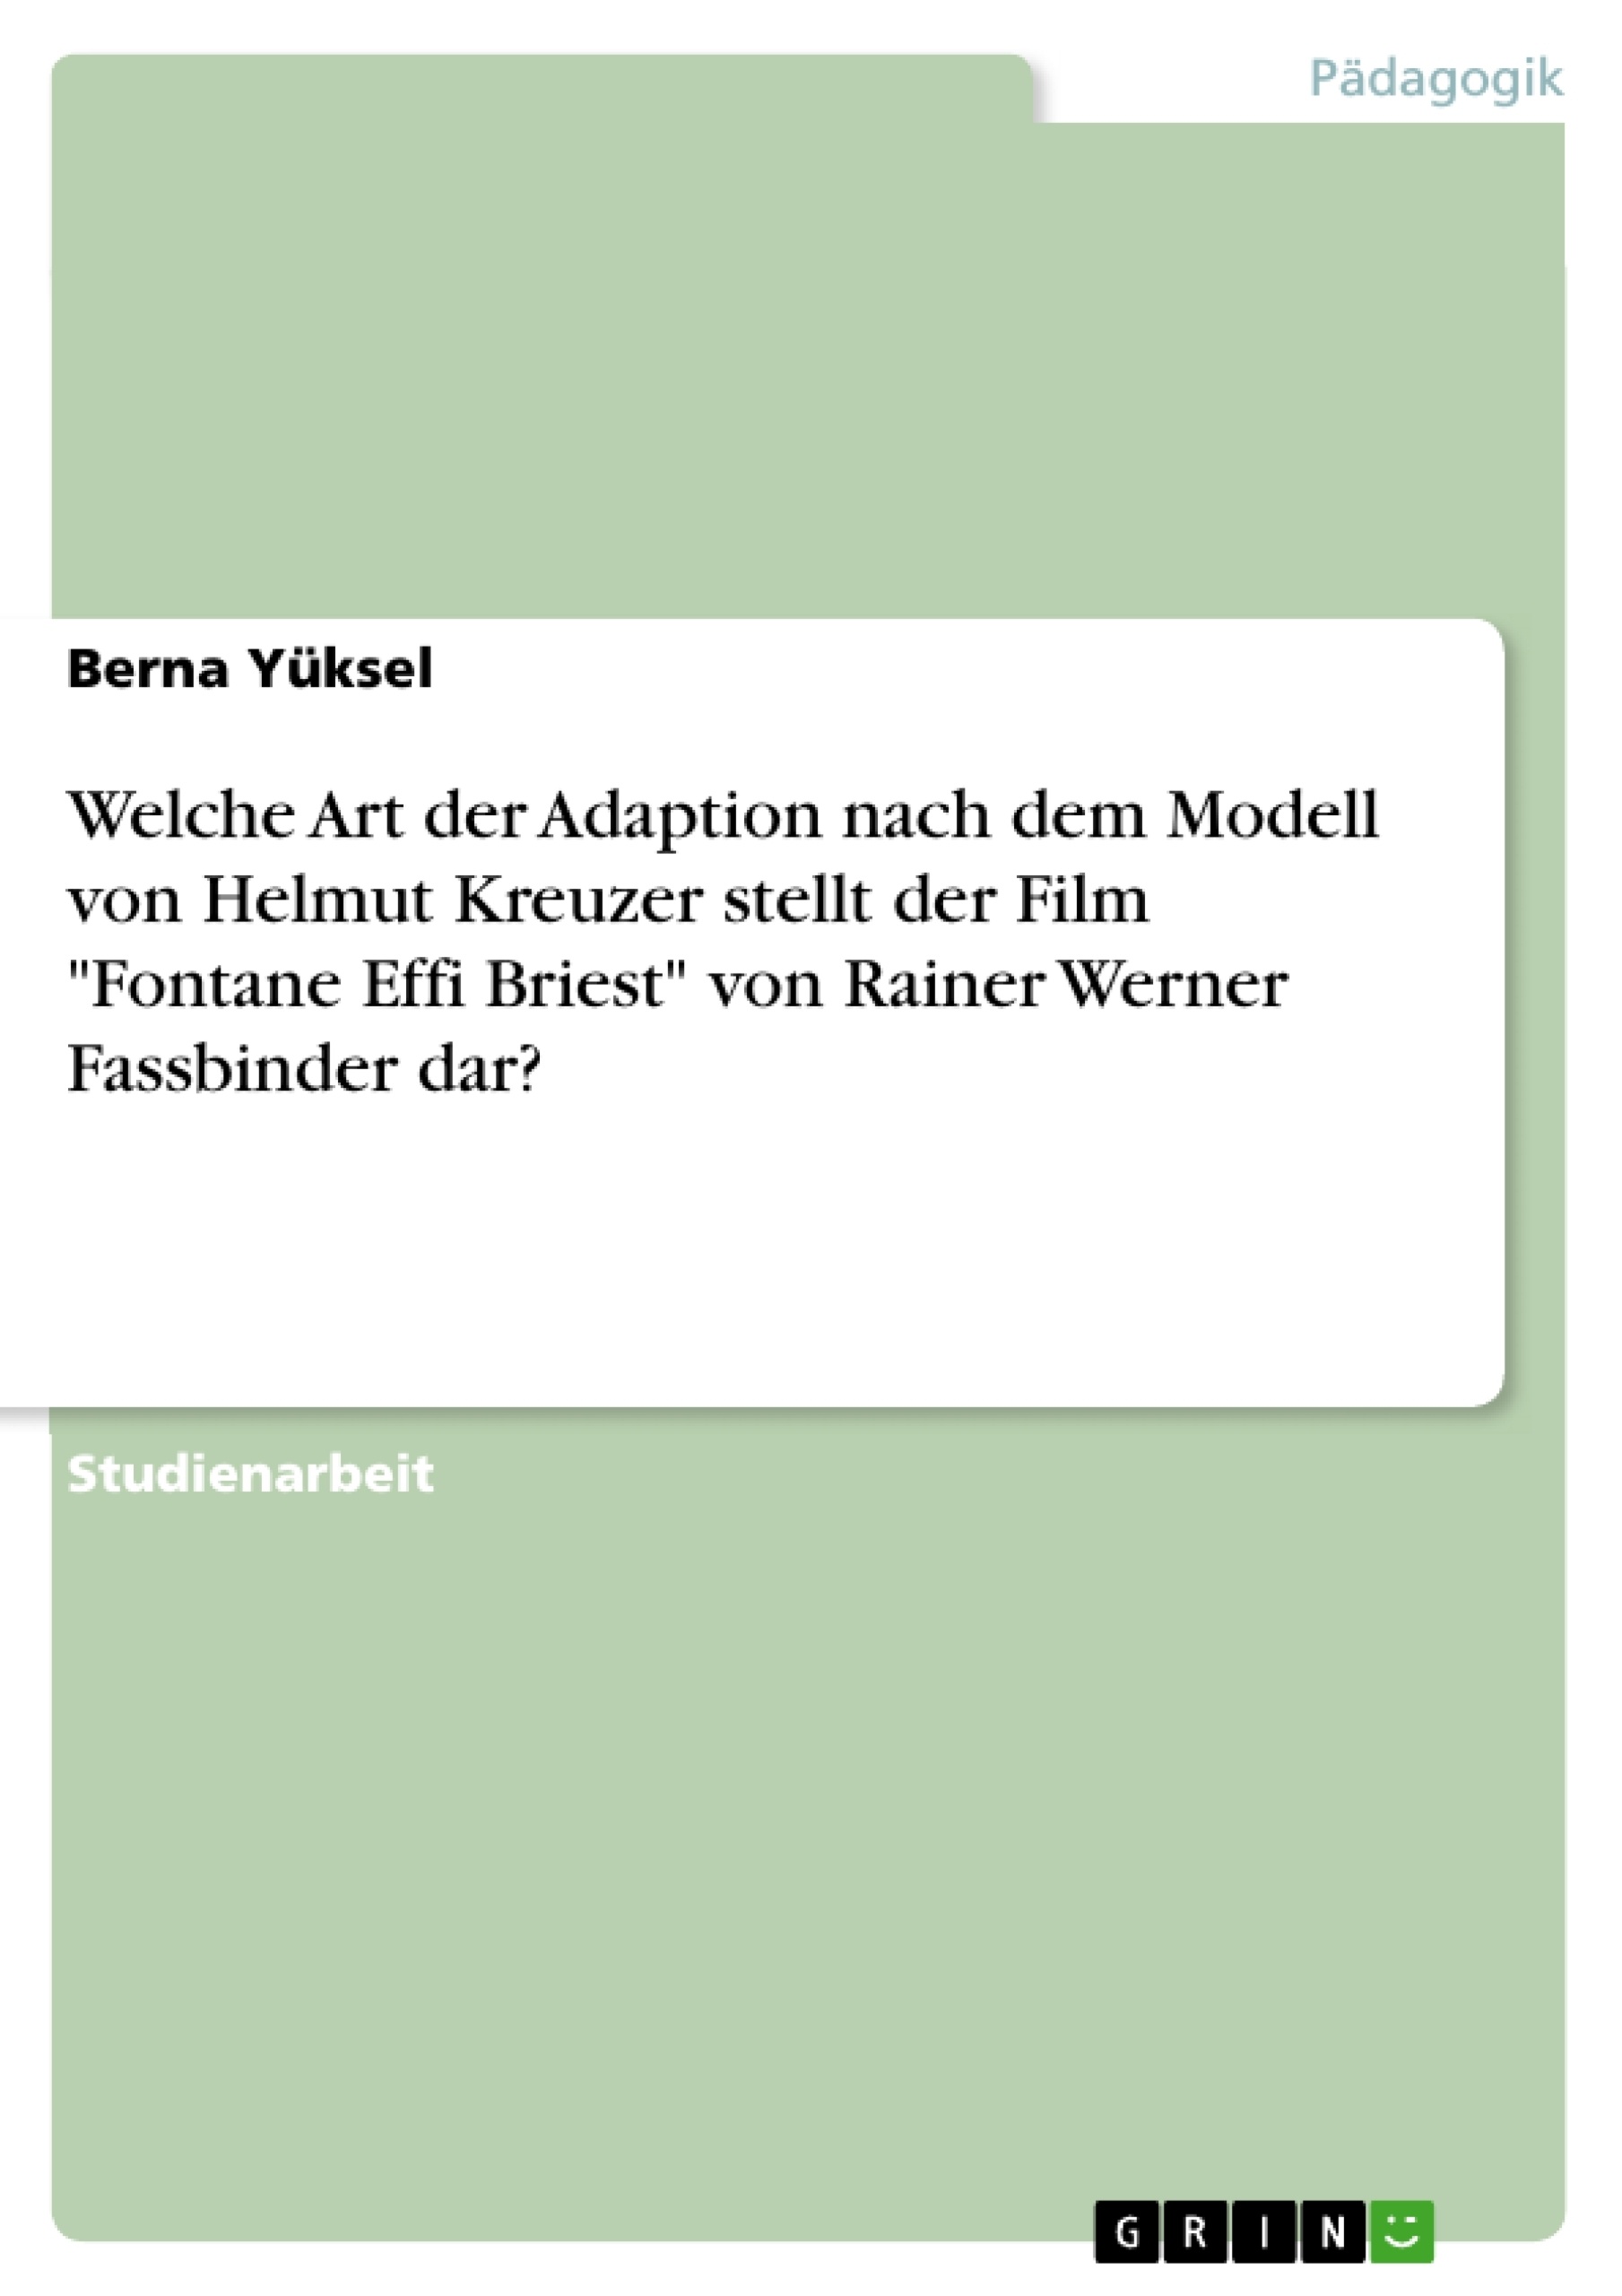 Título: Welche Art der Adaption nach dem Modell von Helmut Kreuzer stellt der Film "Fontane Effi Briest" von Rainer Werner Fassbinder dar?